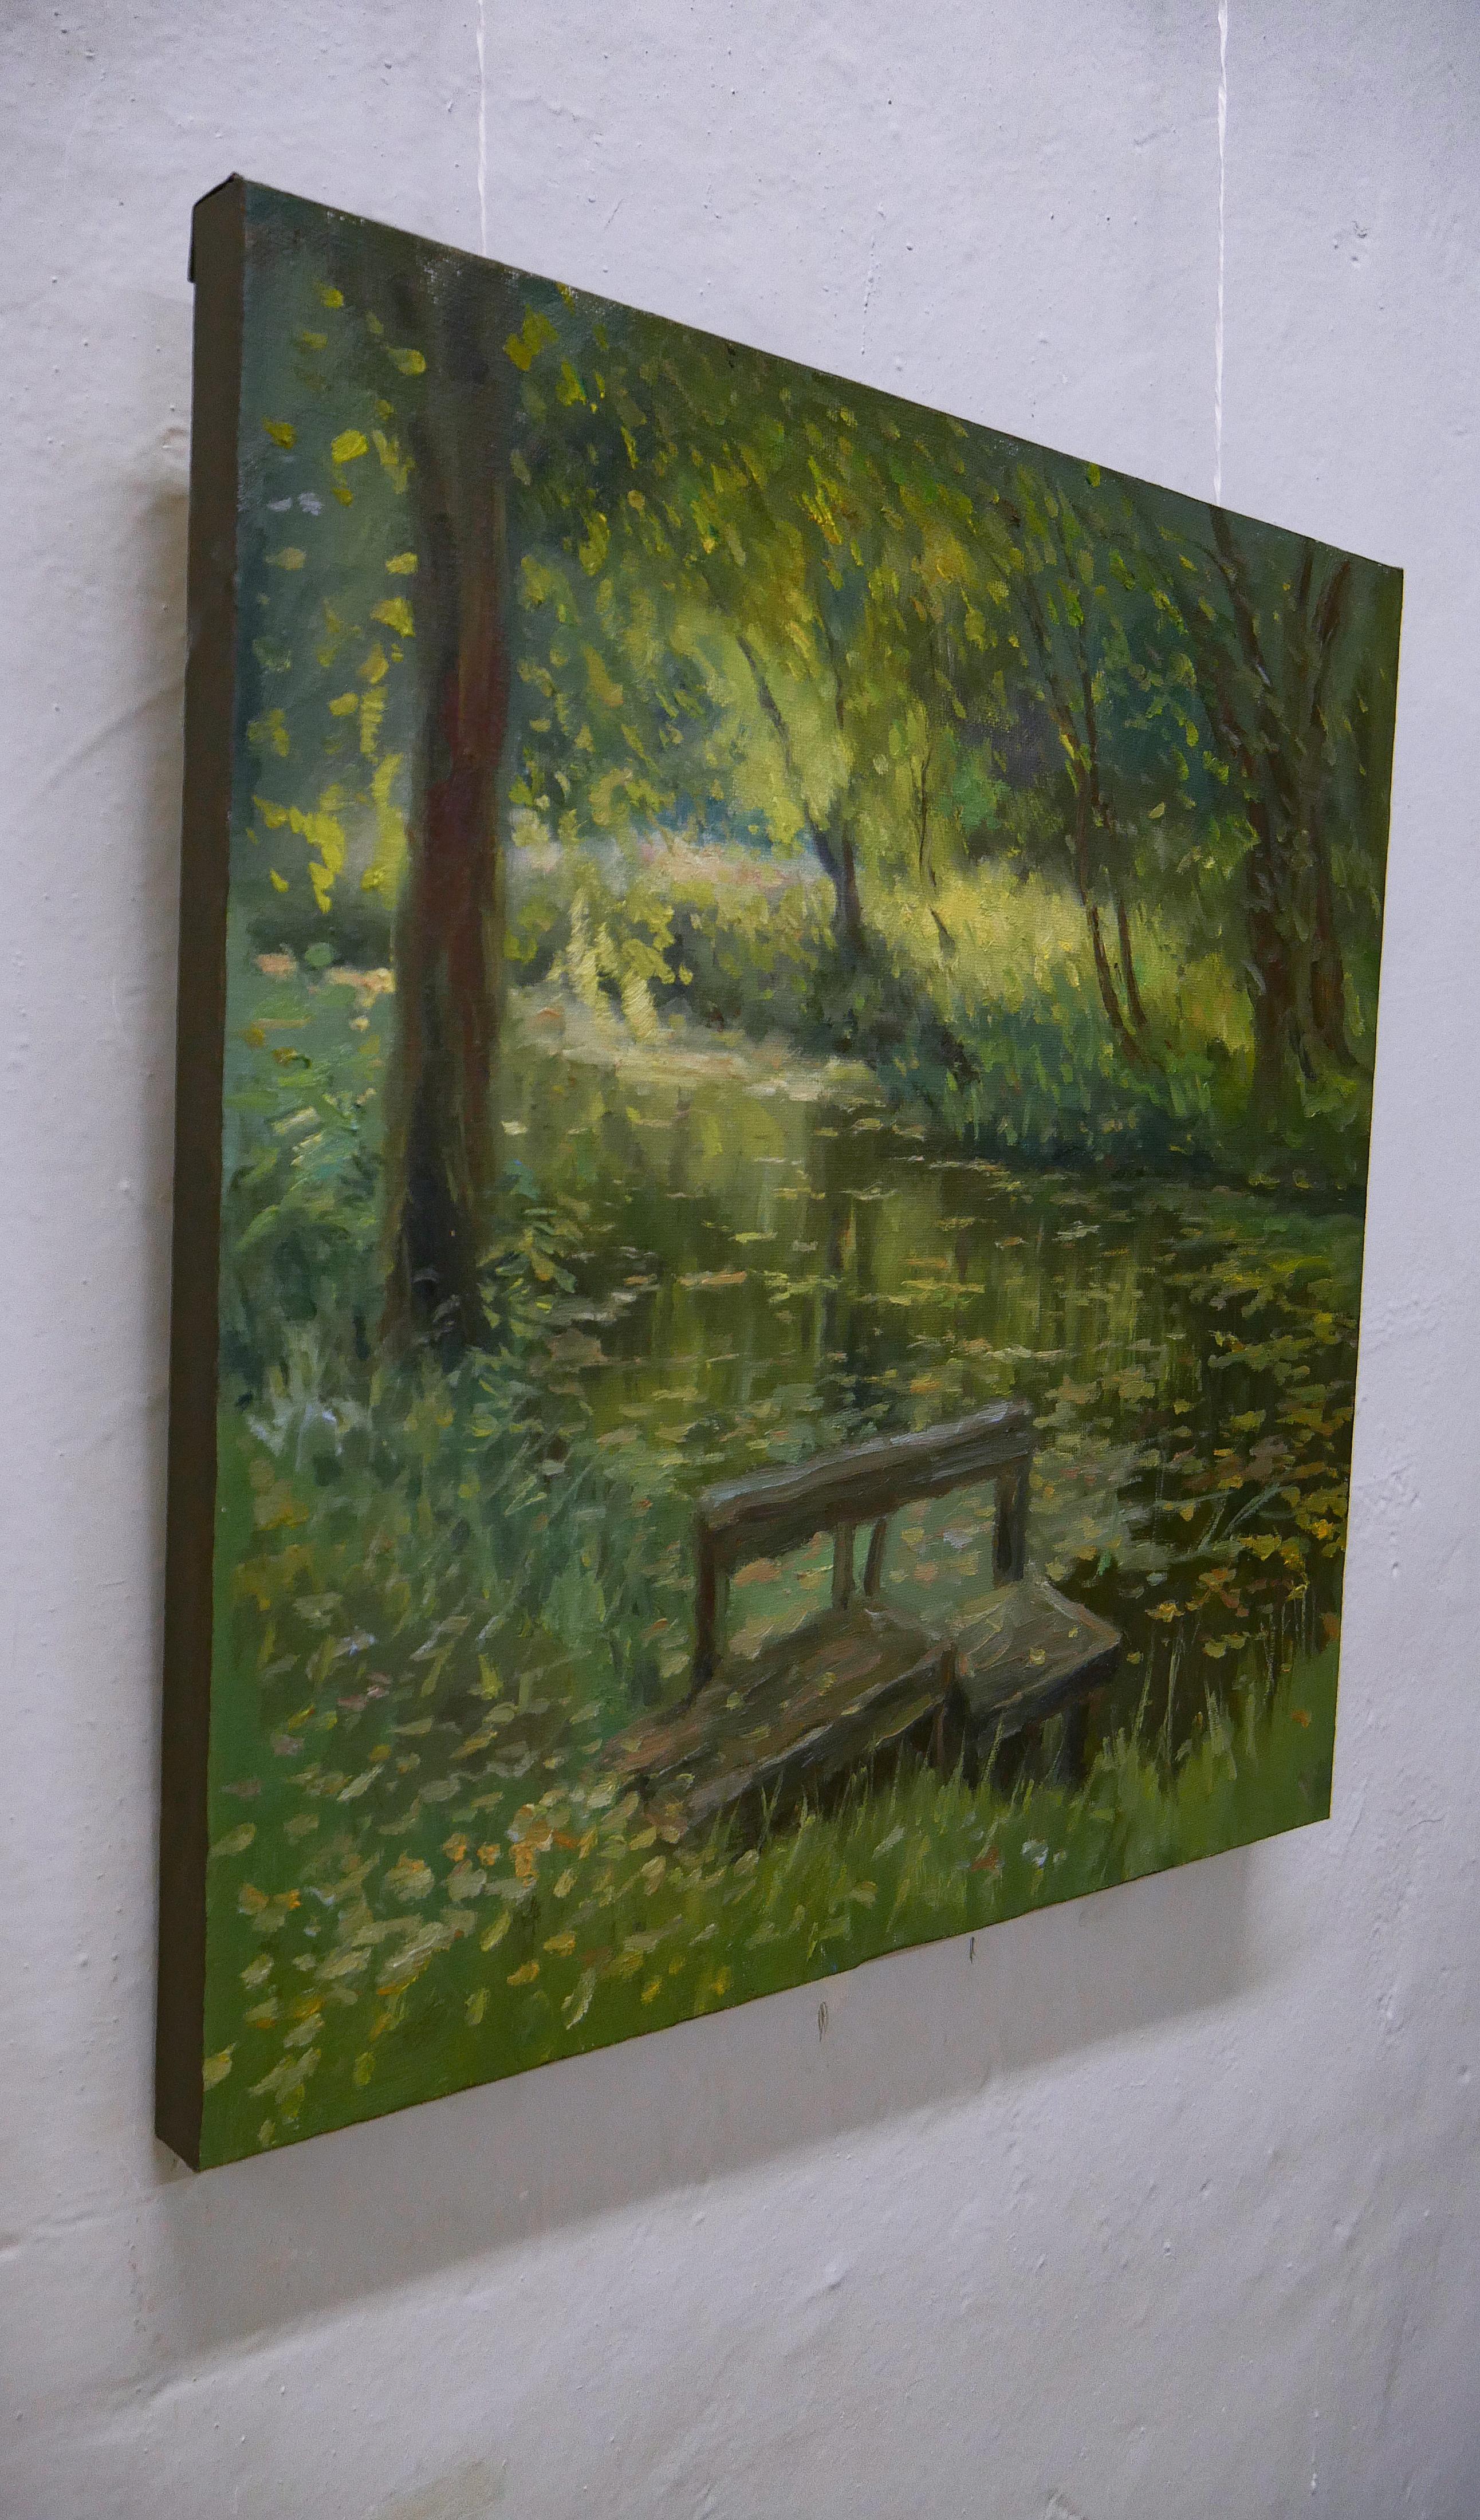 Die Sommerlandschaft am sonnigen Abend ist eines der besten Gemälde von Nikolay.
Als der Künstler an den Ort kam, war er von der schönen Abendsonne beeindruckt. Das warme Licht, der bewachsene Fluss, die gekrümmten Bäume und der alte Steg gaben ihm